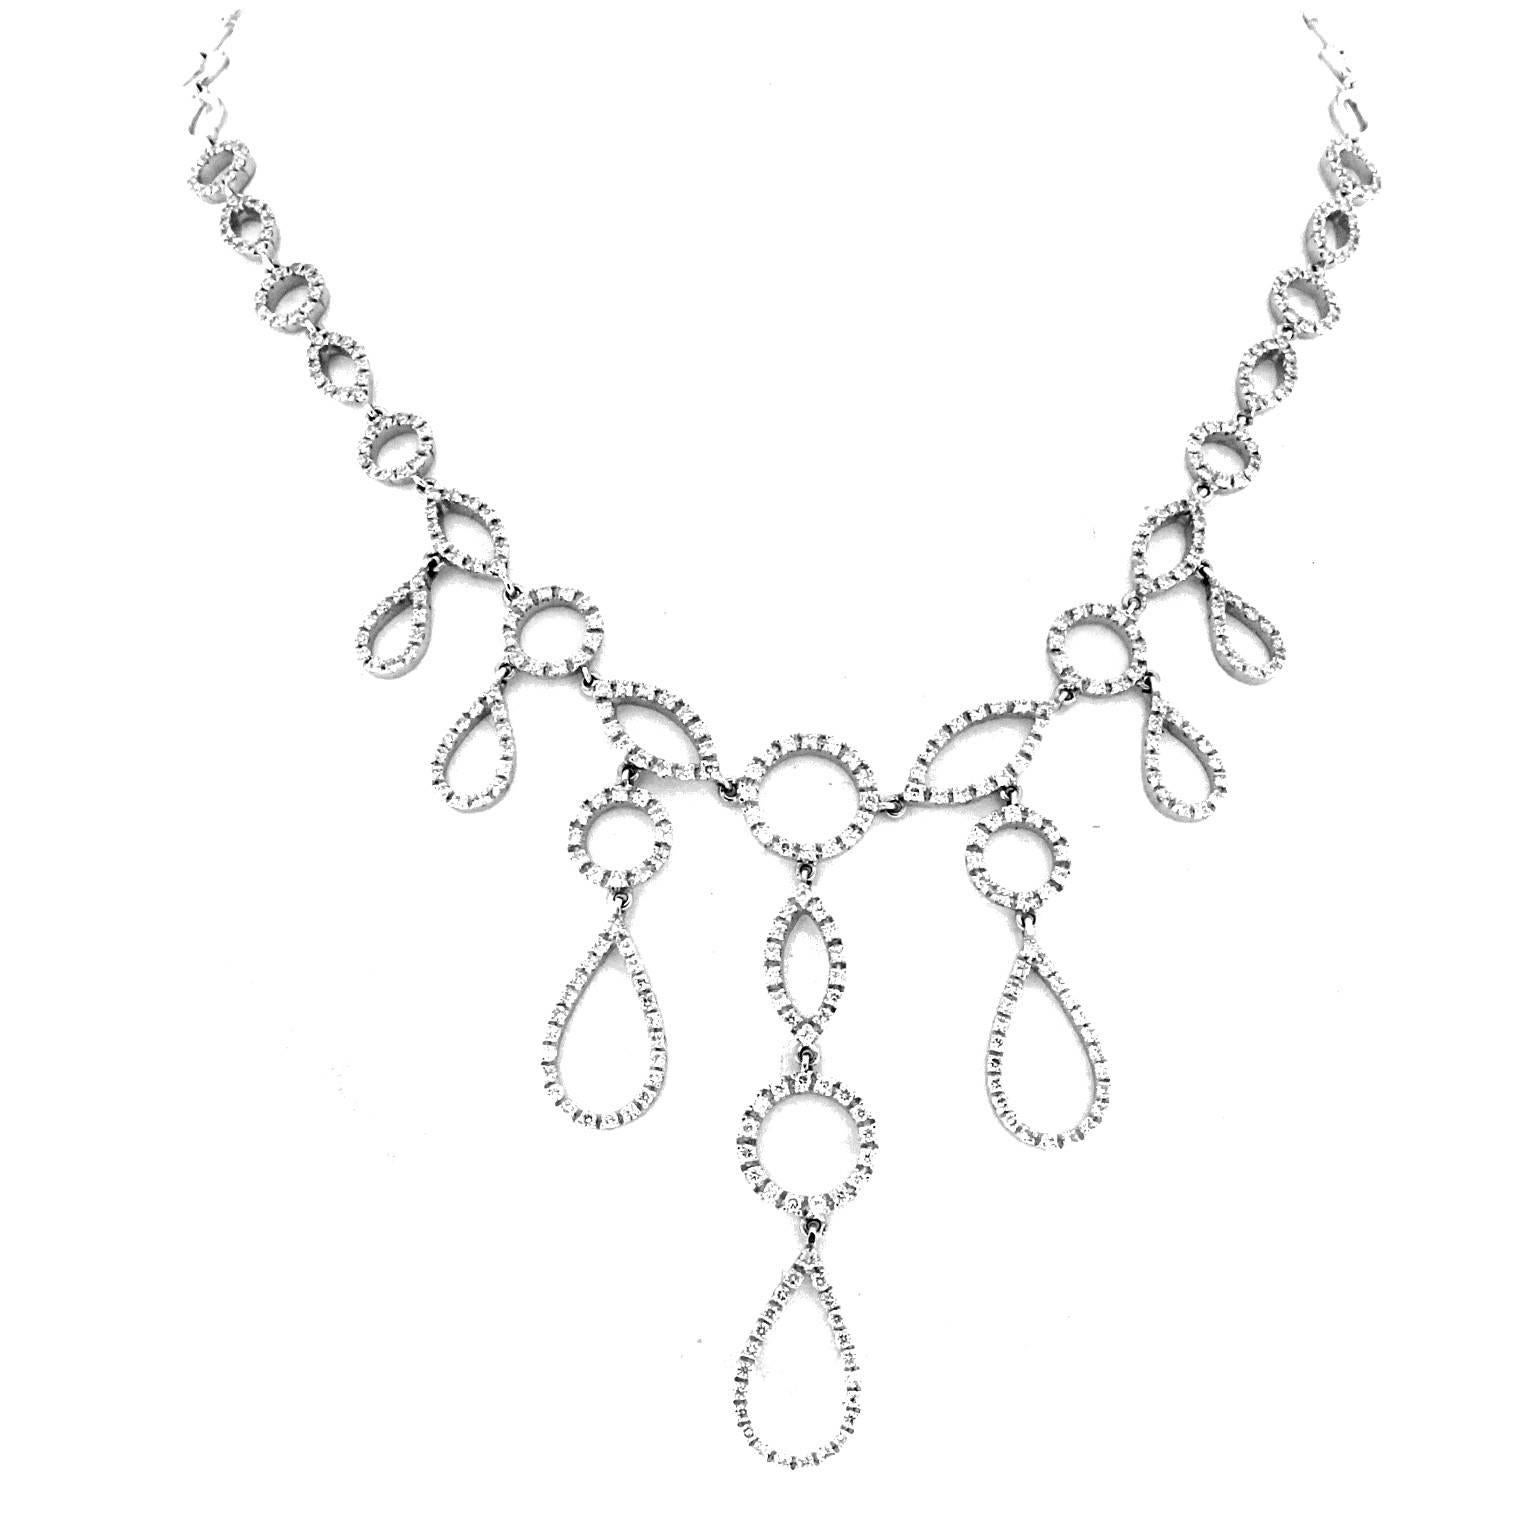 18 Karat White Gold and White Diamond Necklace